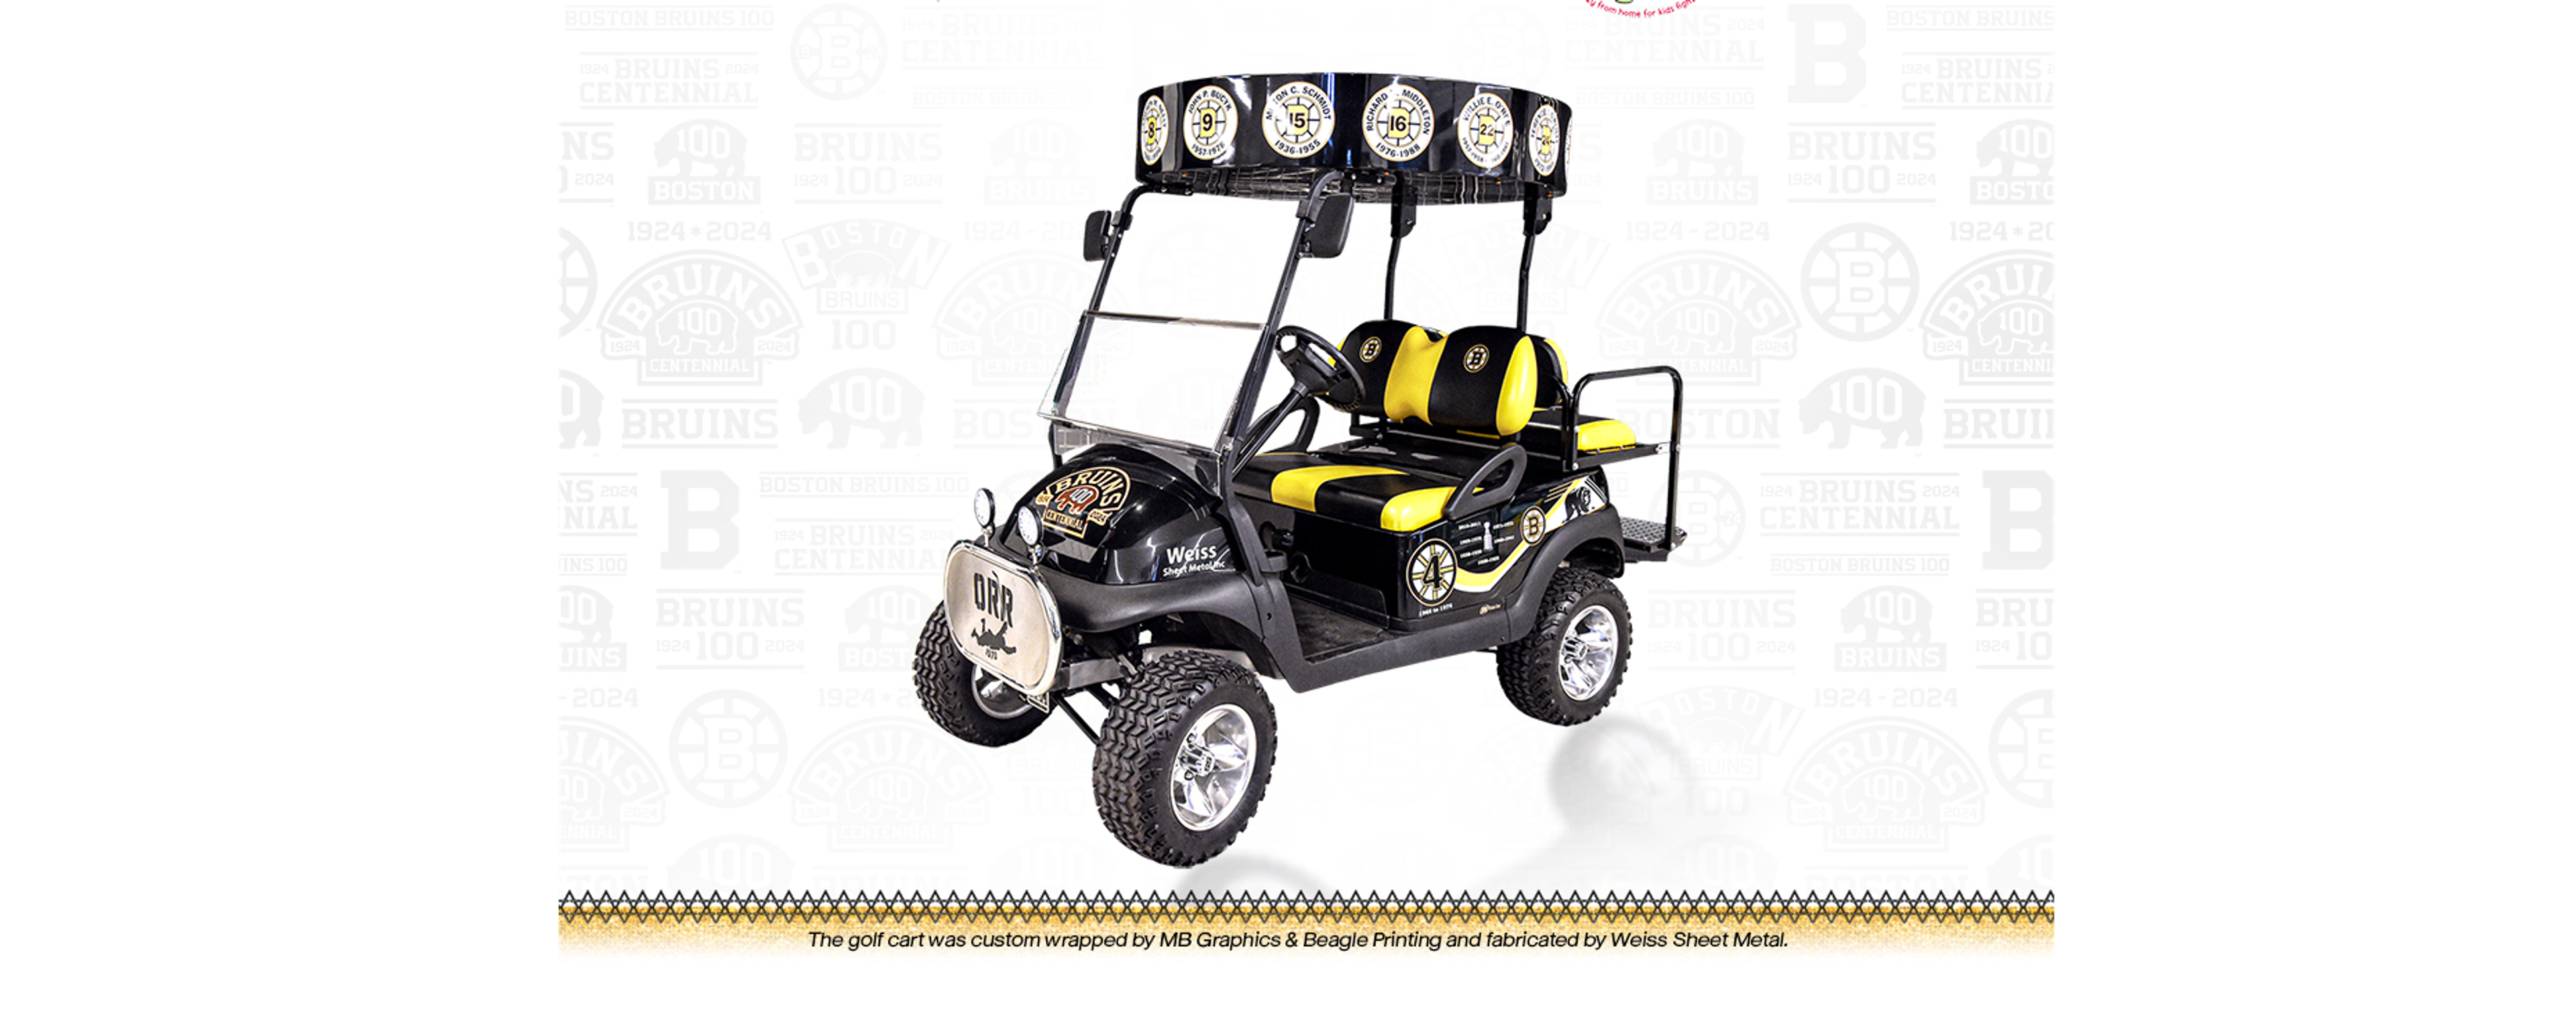 Bruins Golf Cart, Meet & Greet w/ Bobby Orr & Bruins Tickets featured image